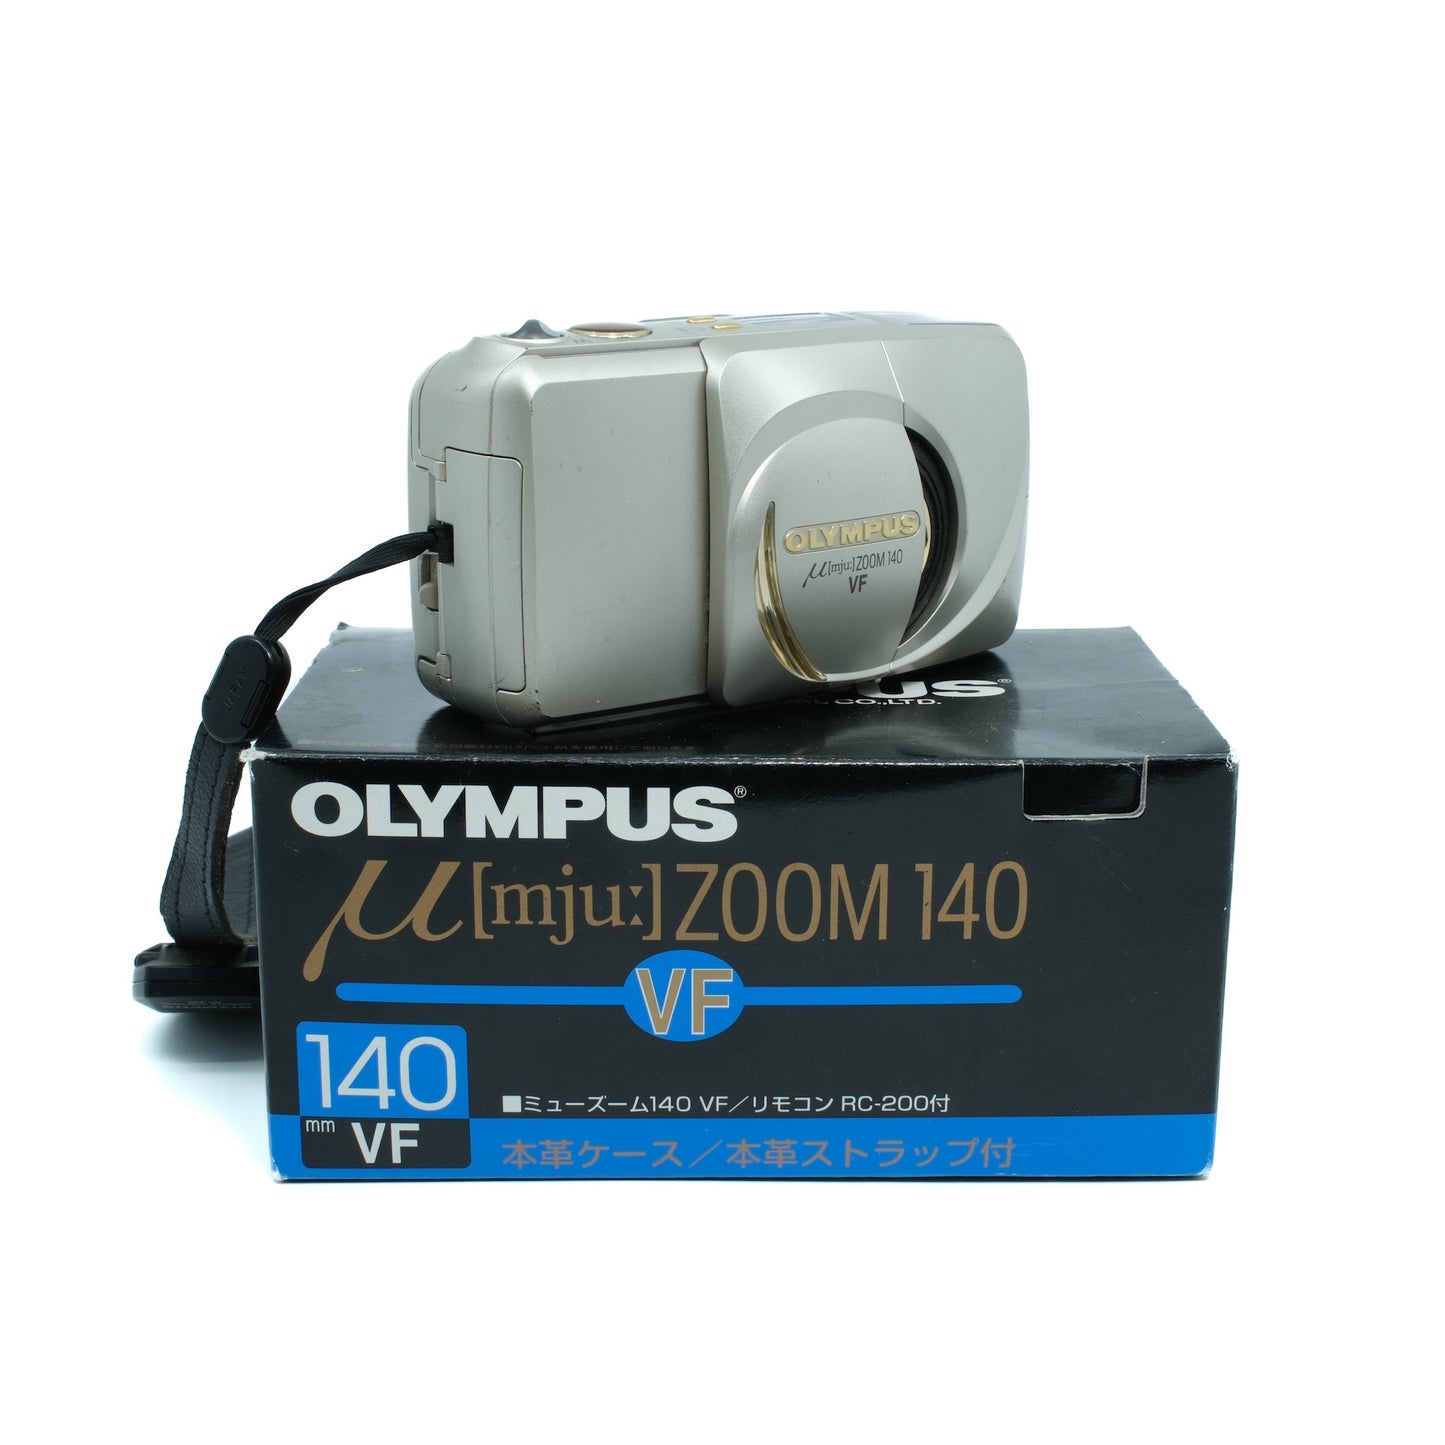 Olympus MJU 140 VF